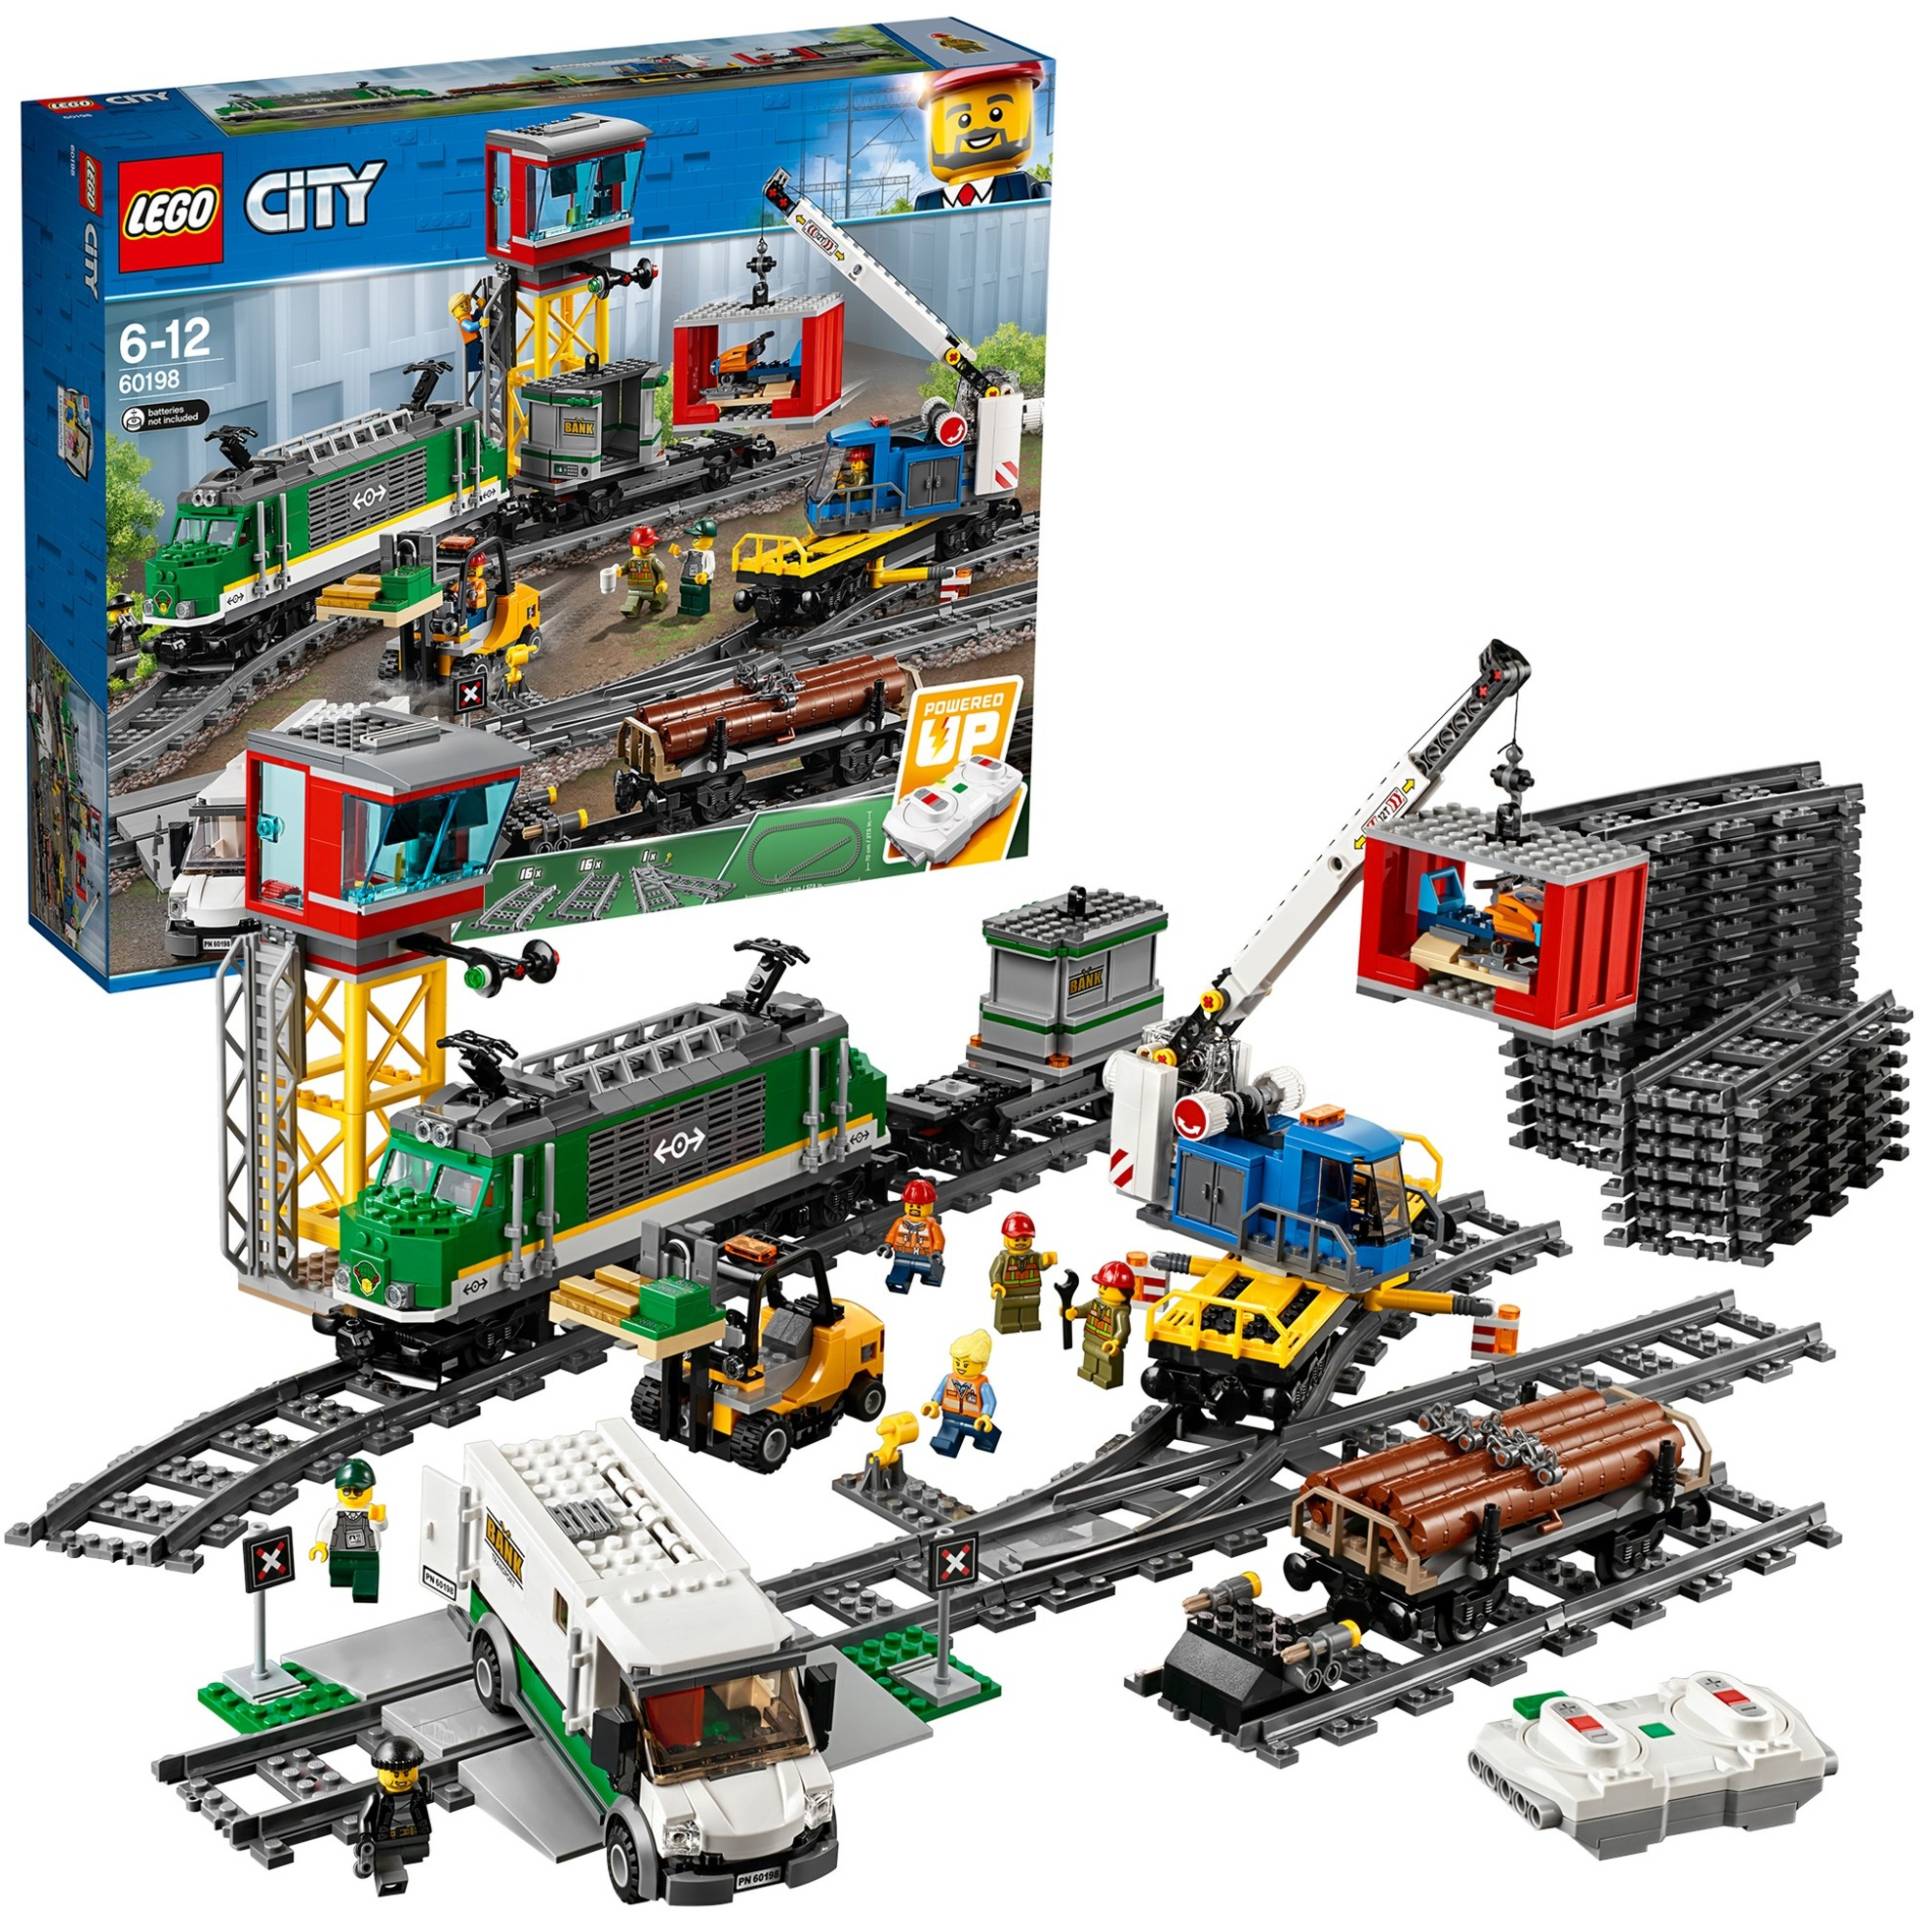 60198 City Güterzug, Konstruktionsspielzeug von Lego